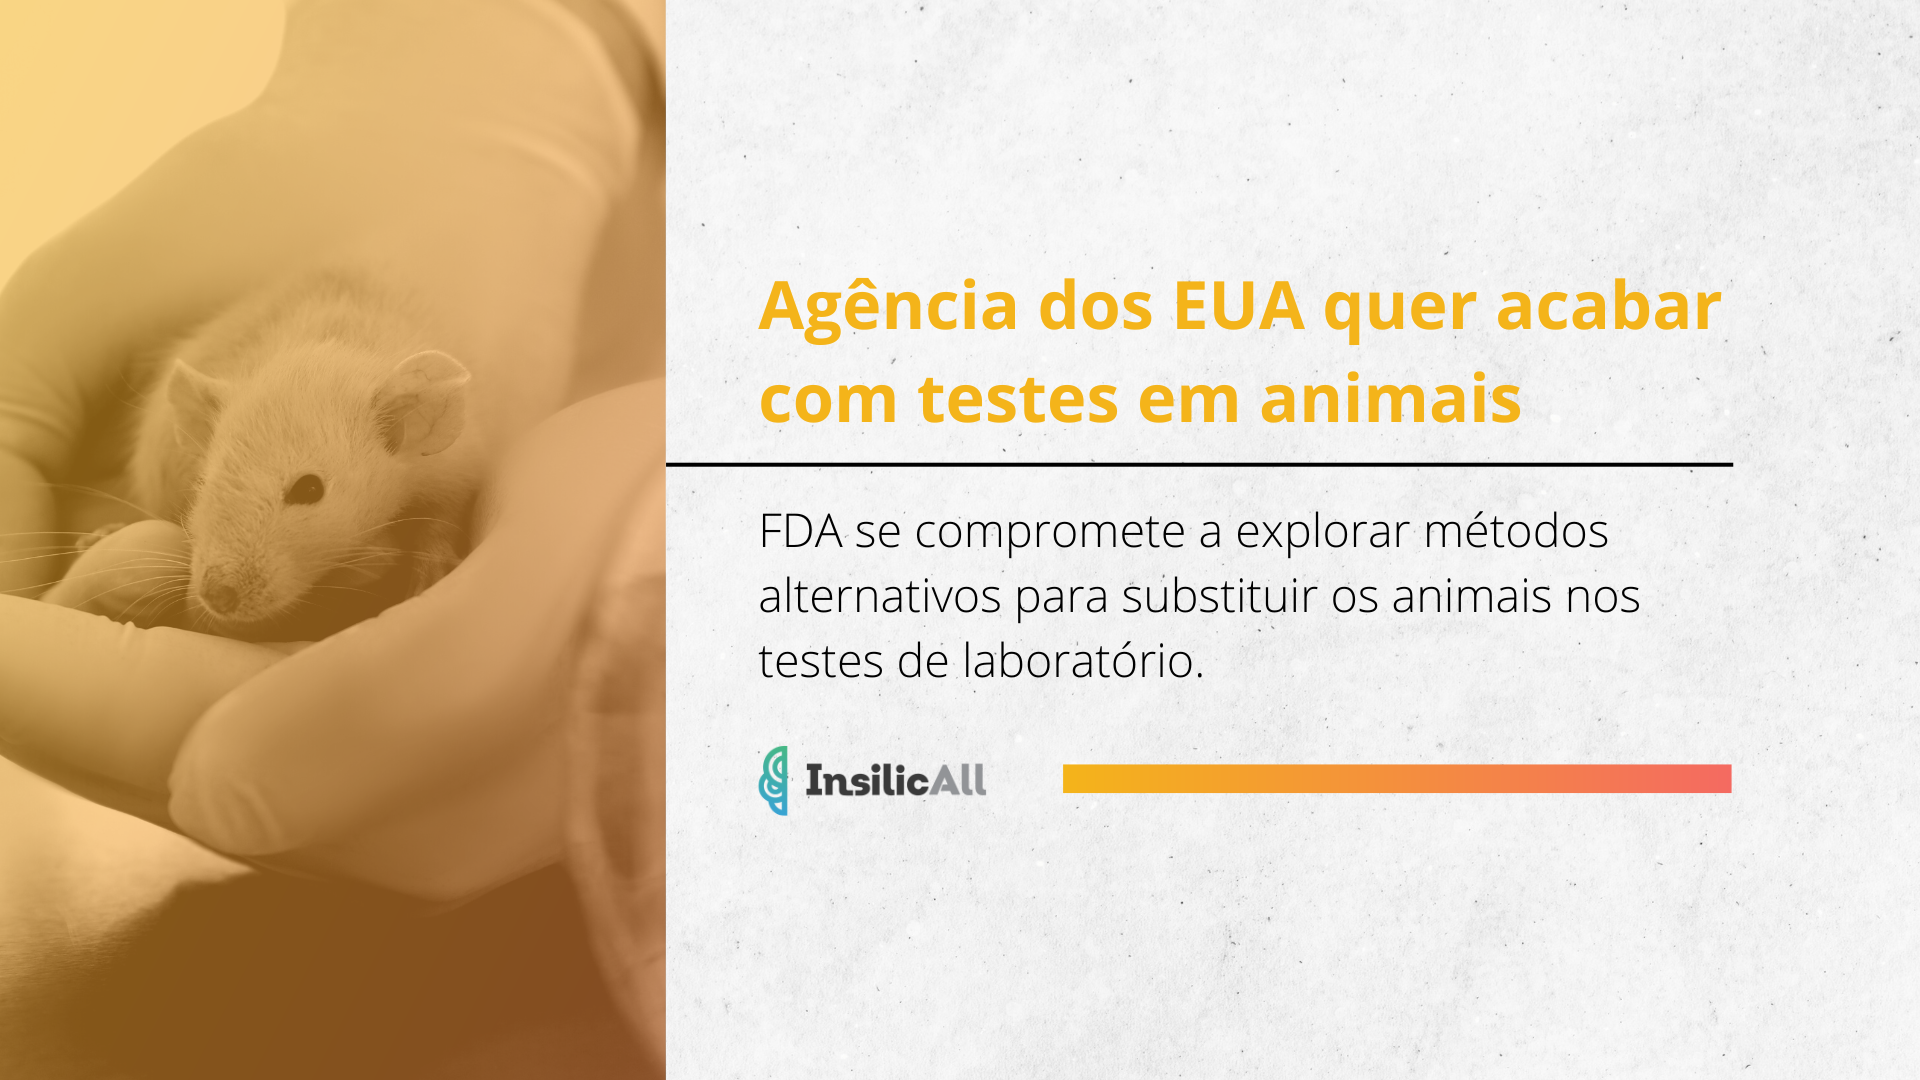 Agência dos EUA que acabar com testes em animais em laboratório